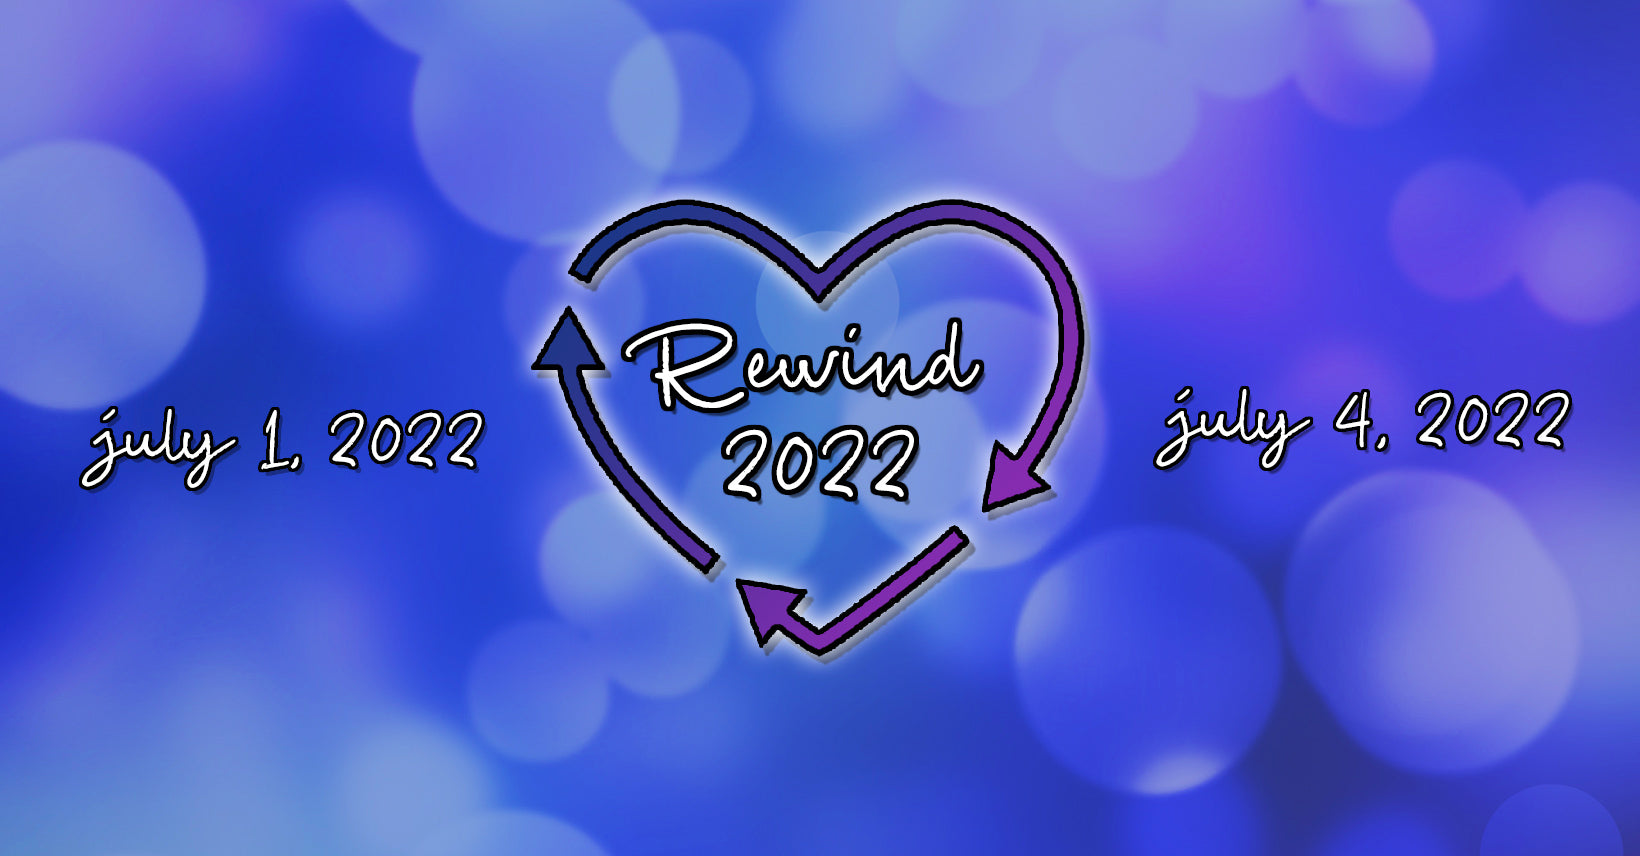 REWIND 2022 FAQ